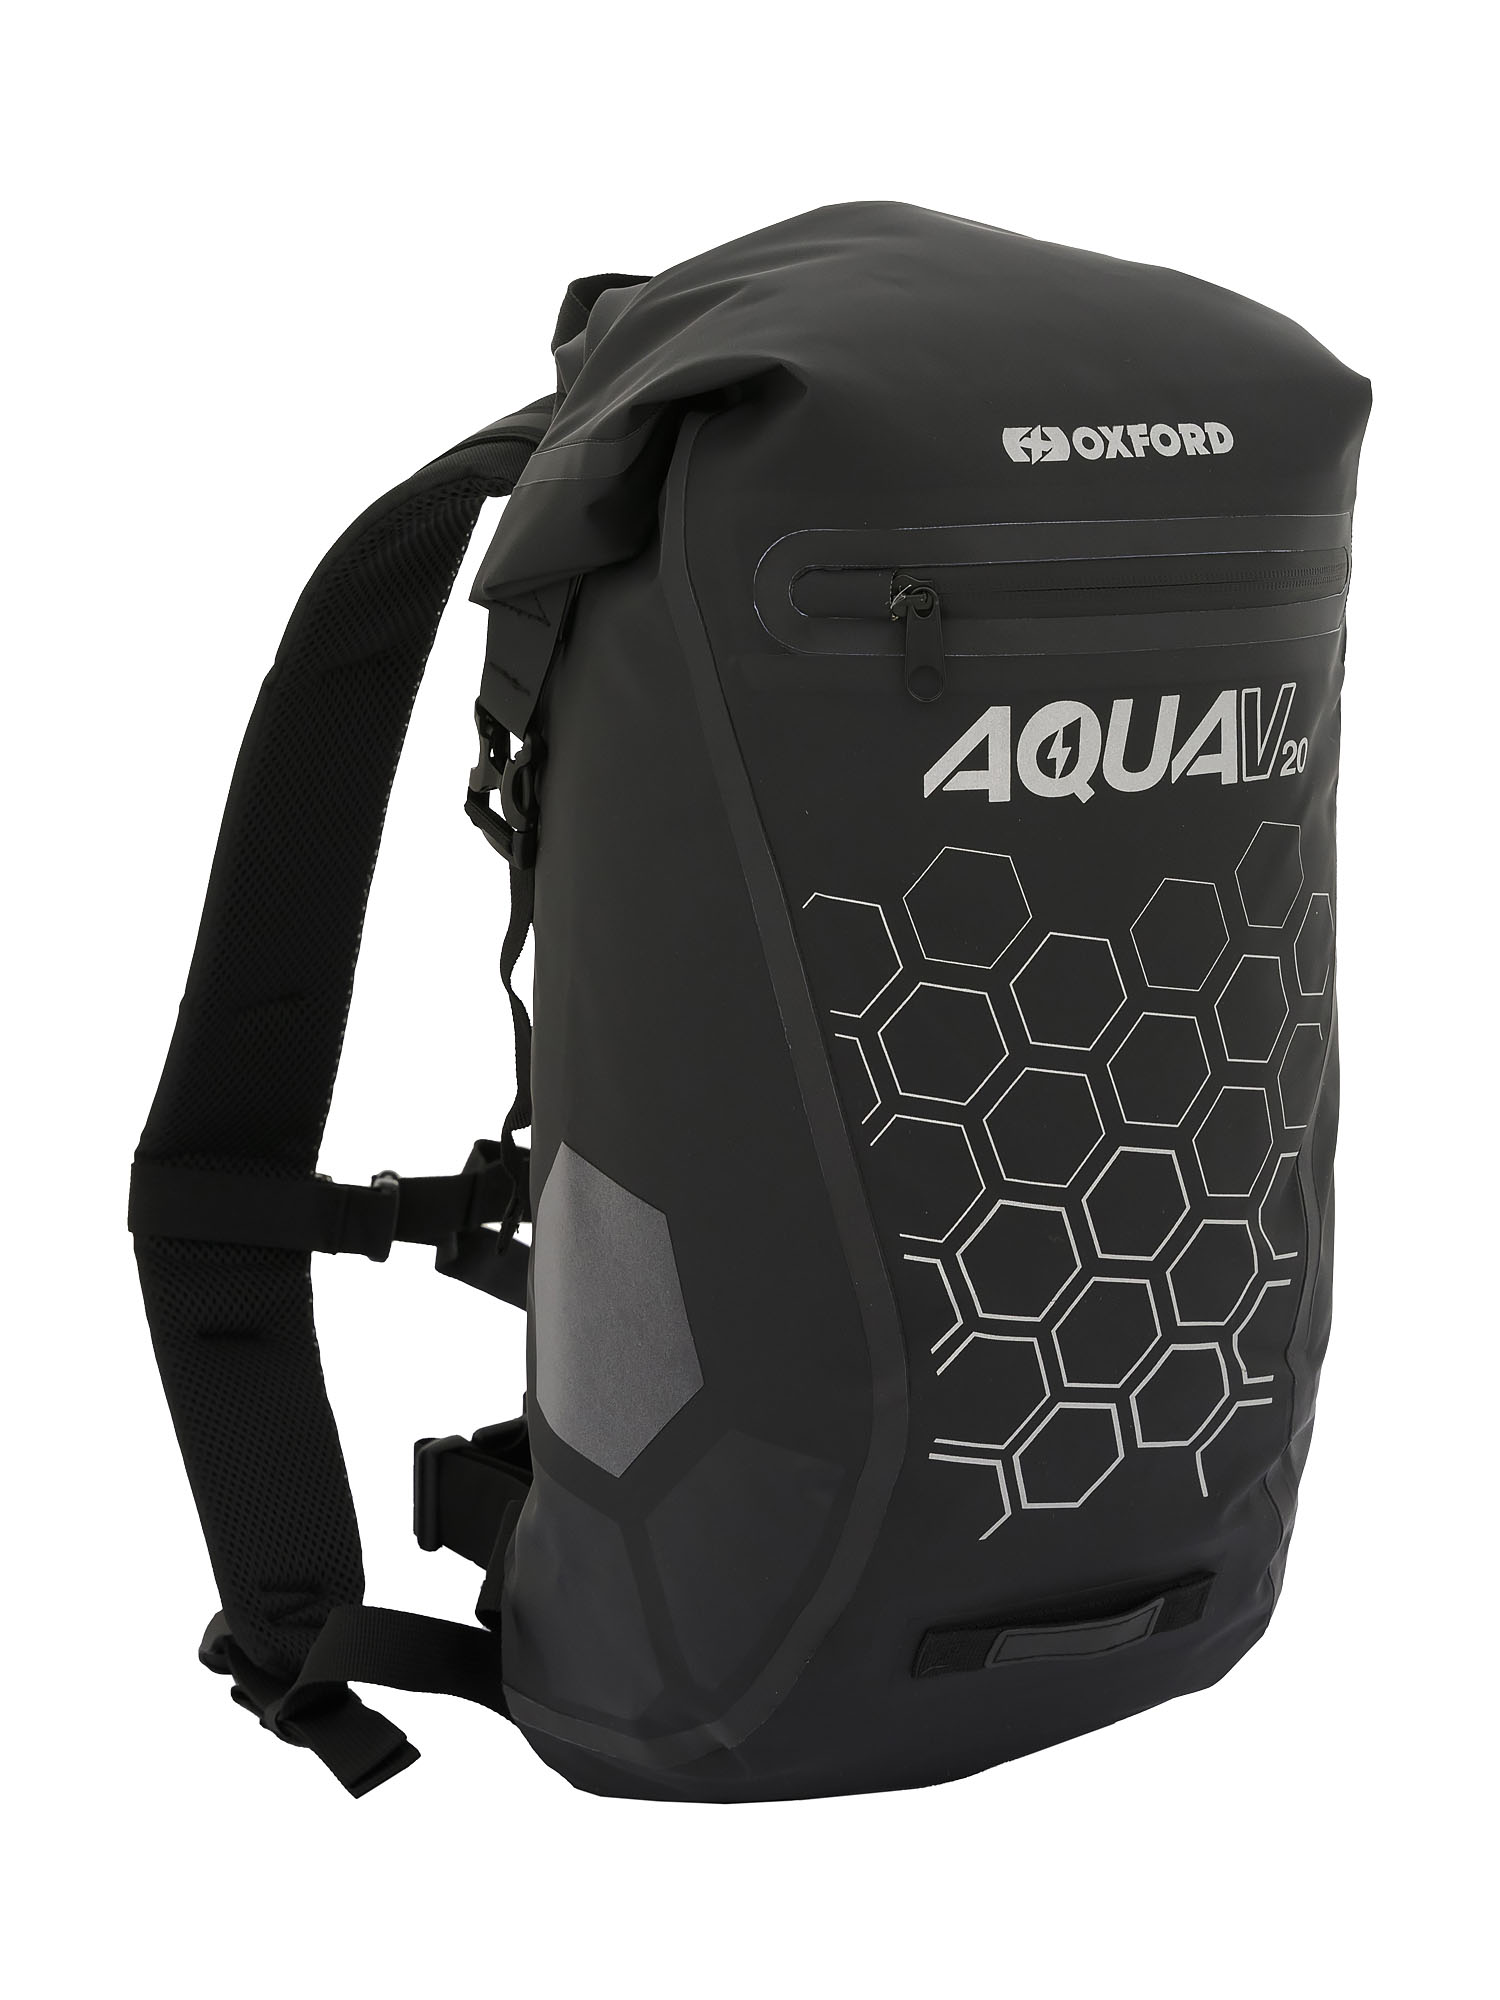 Рюкзак Oxford Aqua V 20 Backpack Black